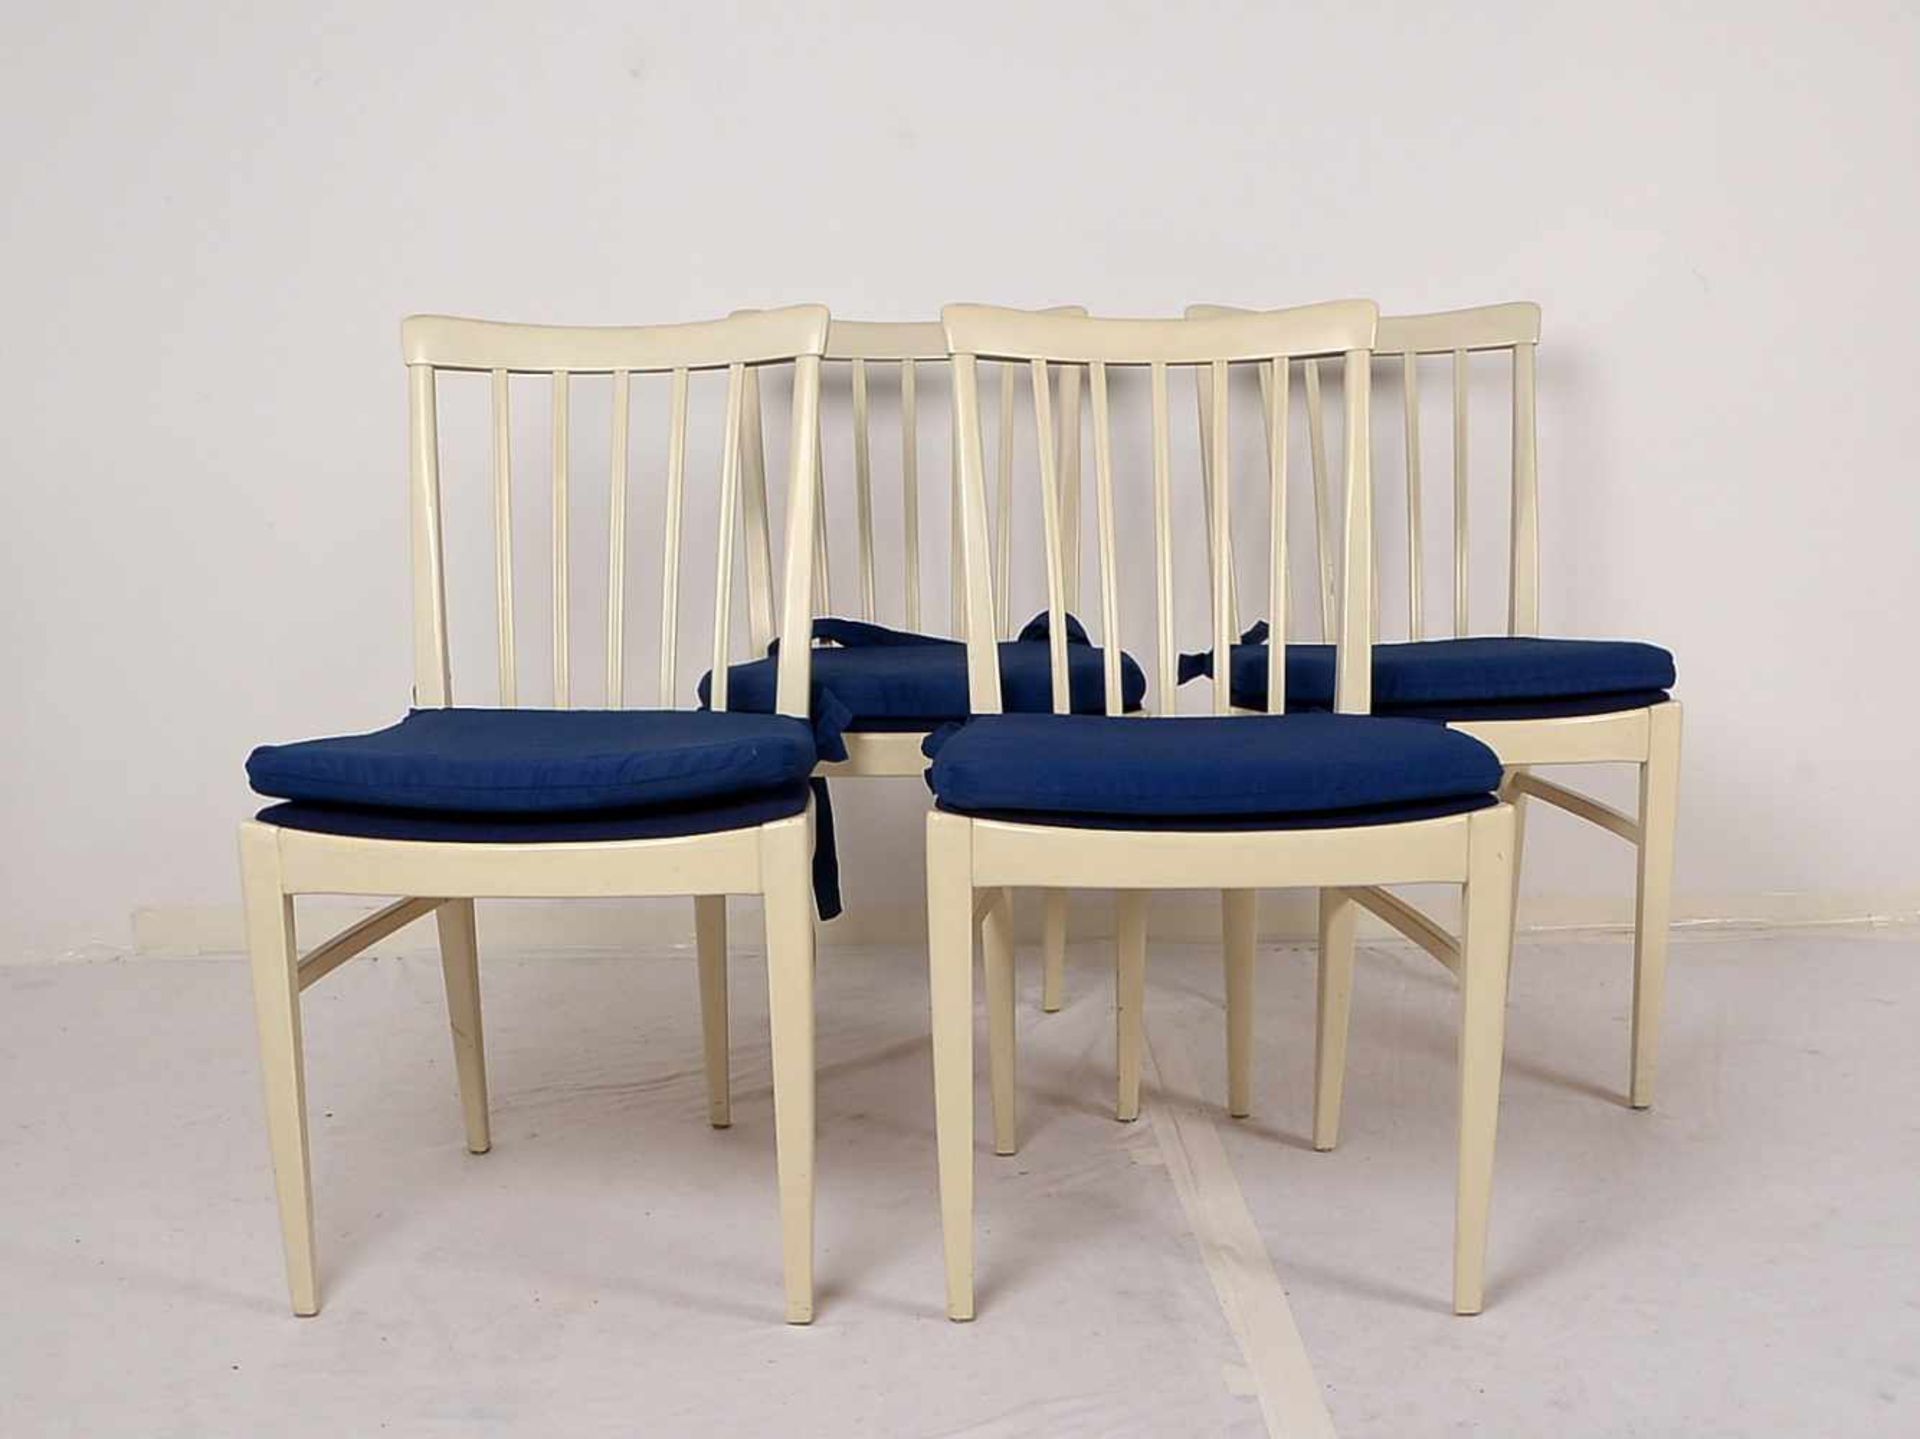 Bodafors/Schweden, Satz Stühle, creme-weiß gefasst, mit dunkelblauen Sitzpolstern, Entwurf: Carl - Bild 2 aus 2